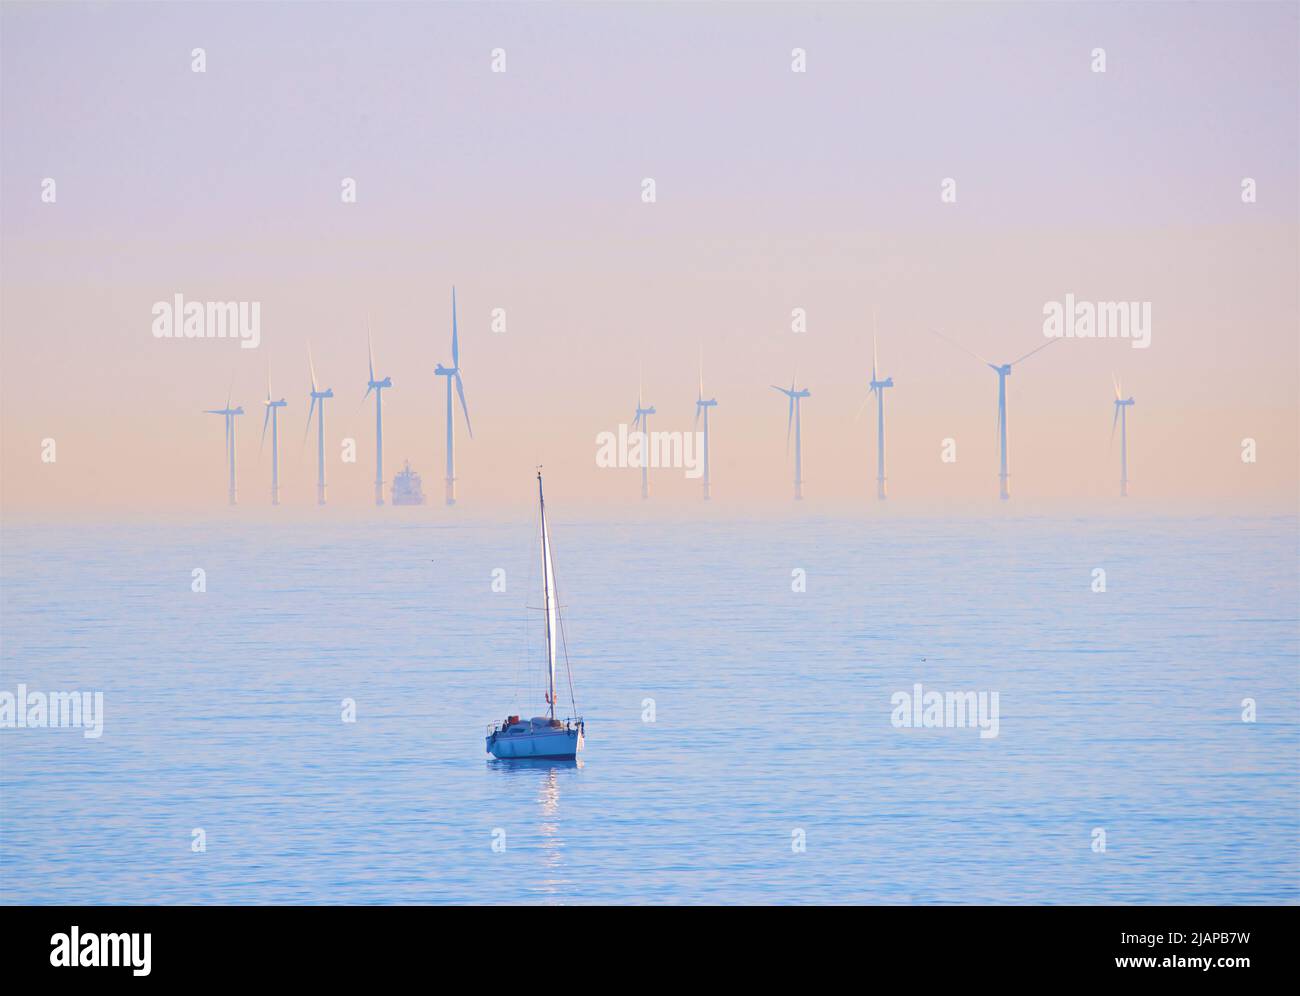 Turbinas del parque eólico marino Rampion ubicado en la costa de Sussex, Inglaterra, Reino Unido. Encargado y producciendo energía renovable en 2018, el parque eólico de 116 turbinas costó £1,3 construir. Yate en primer plano. Foto de stock